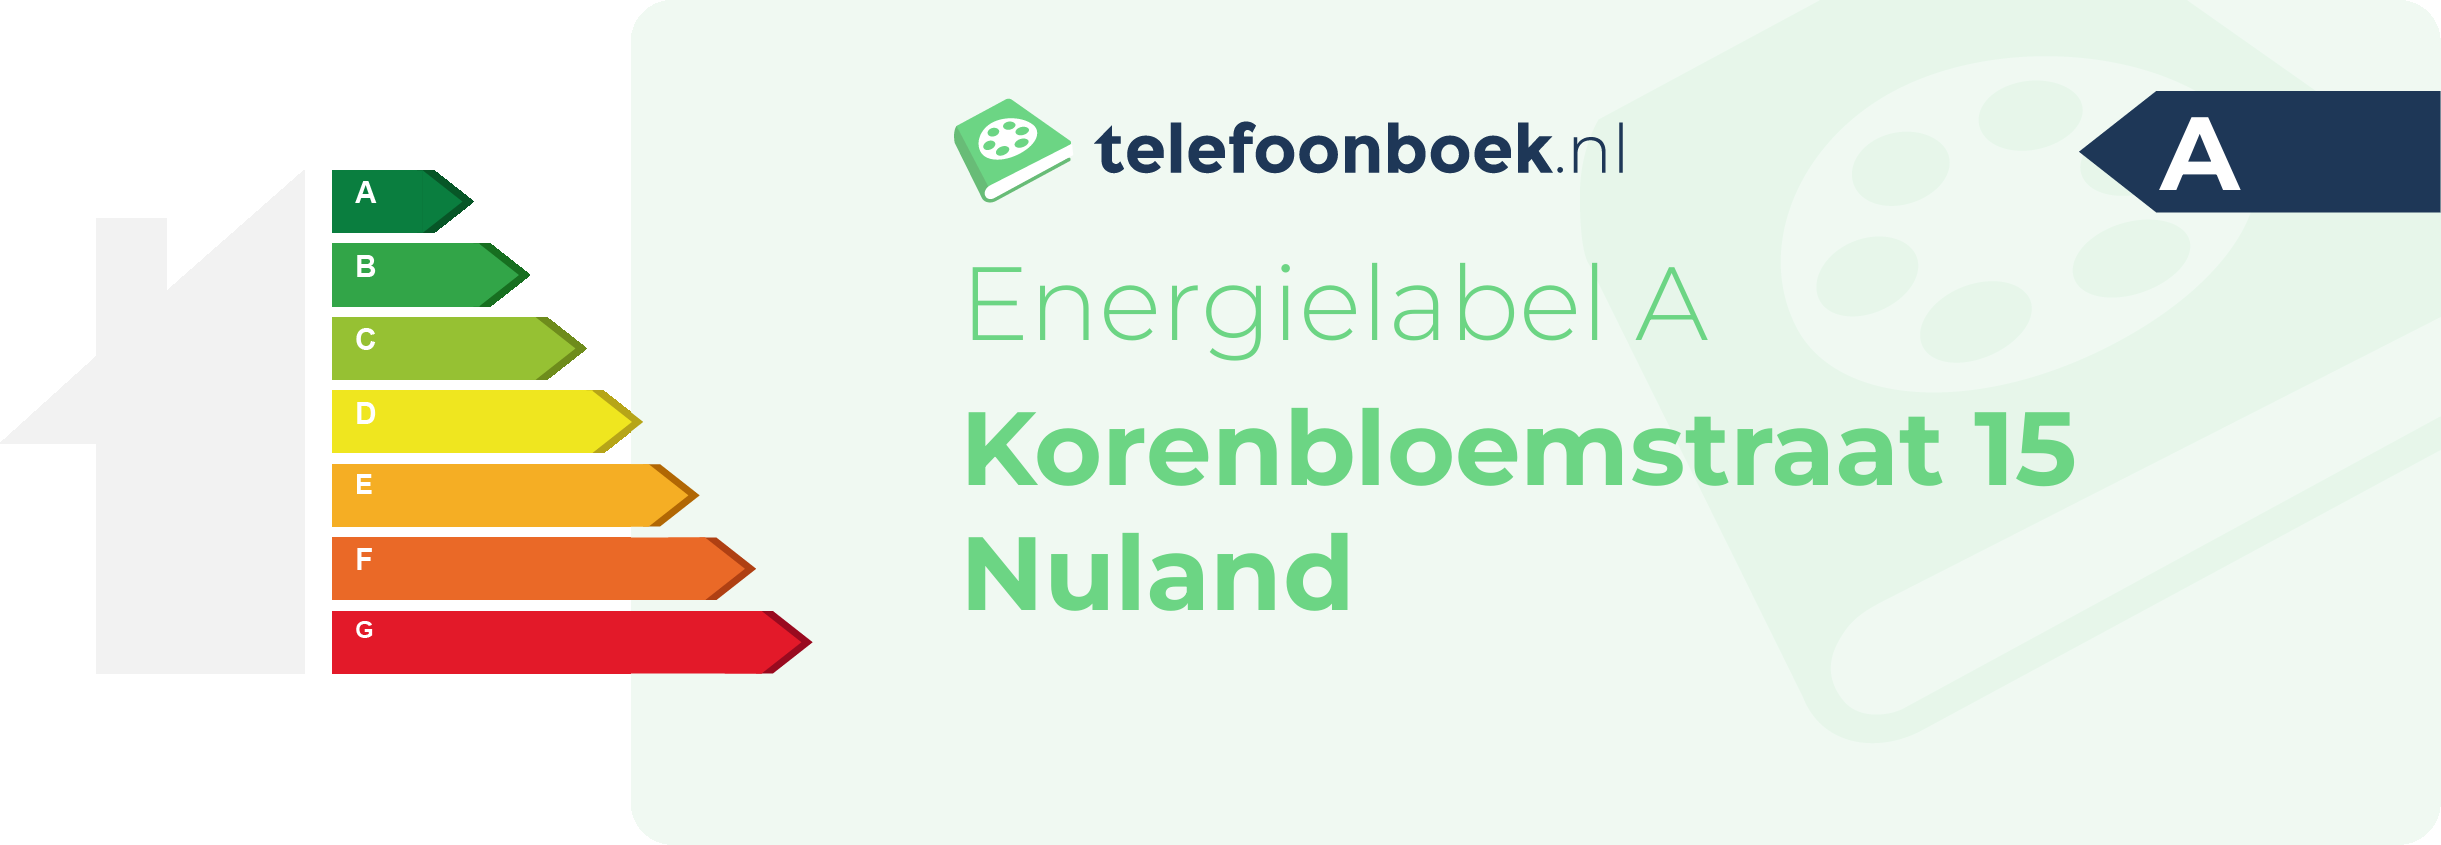 Energielabel Korenbloemstraat 15 Nuland